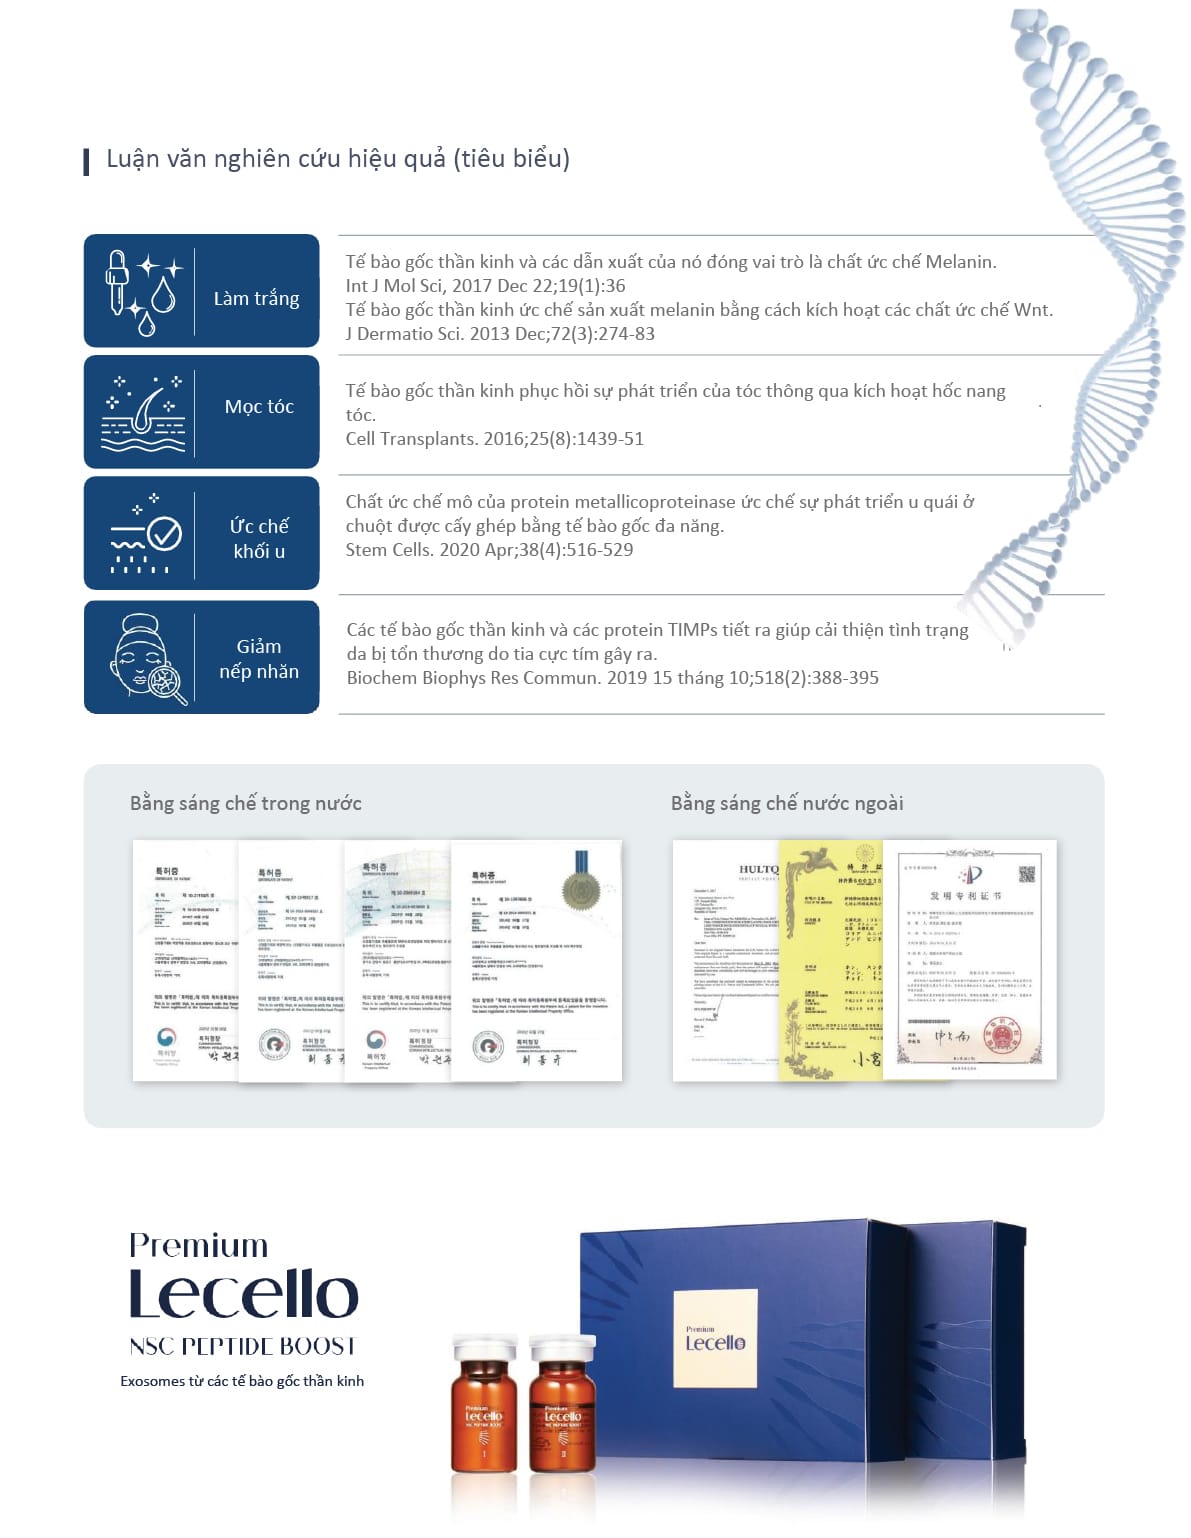 Exosome tế bào gốc Premium Lecello NSC Peptide Boost